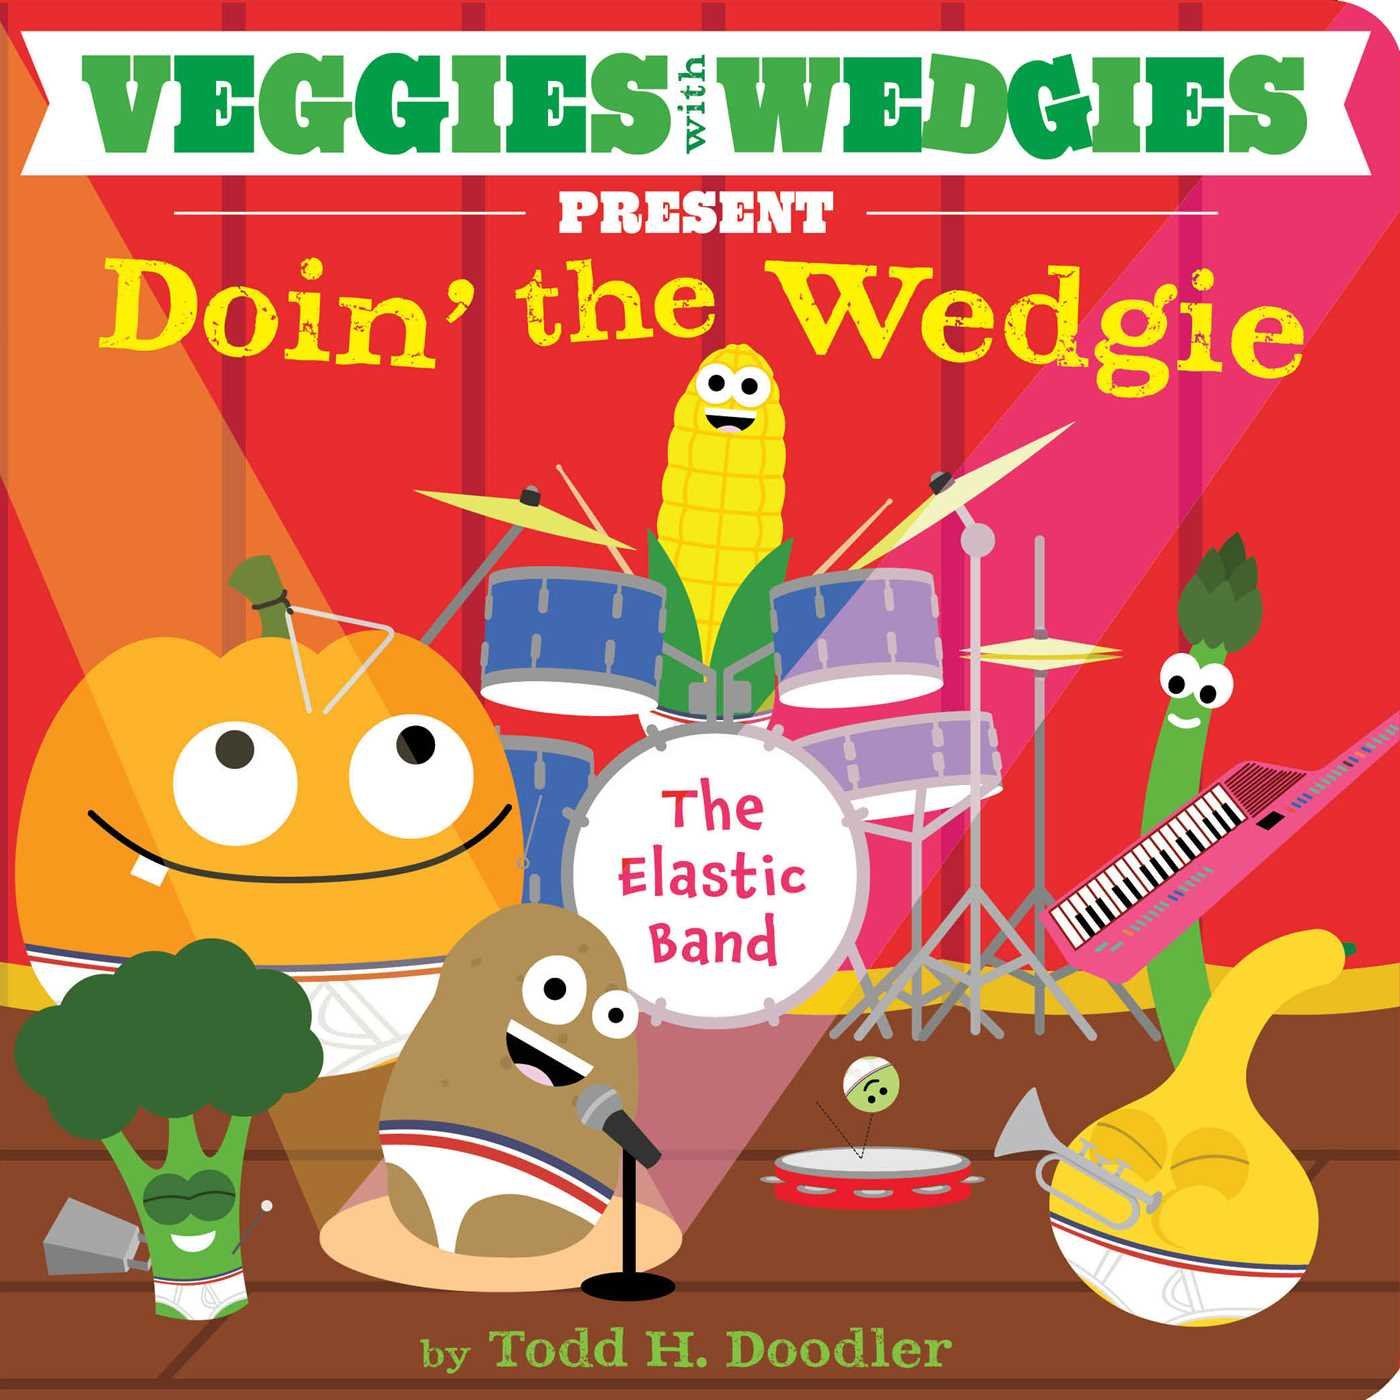 Veggies with Wedgies Present Doin' the Wedgie: Todd H. Doodler ...